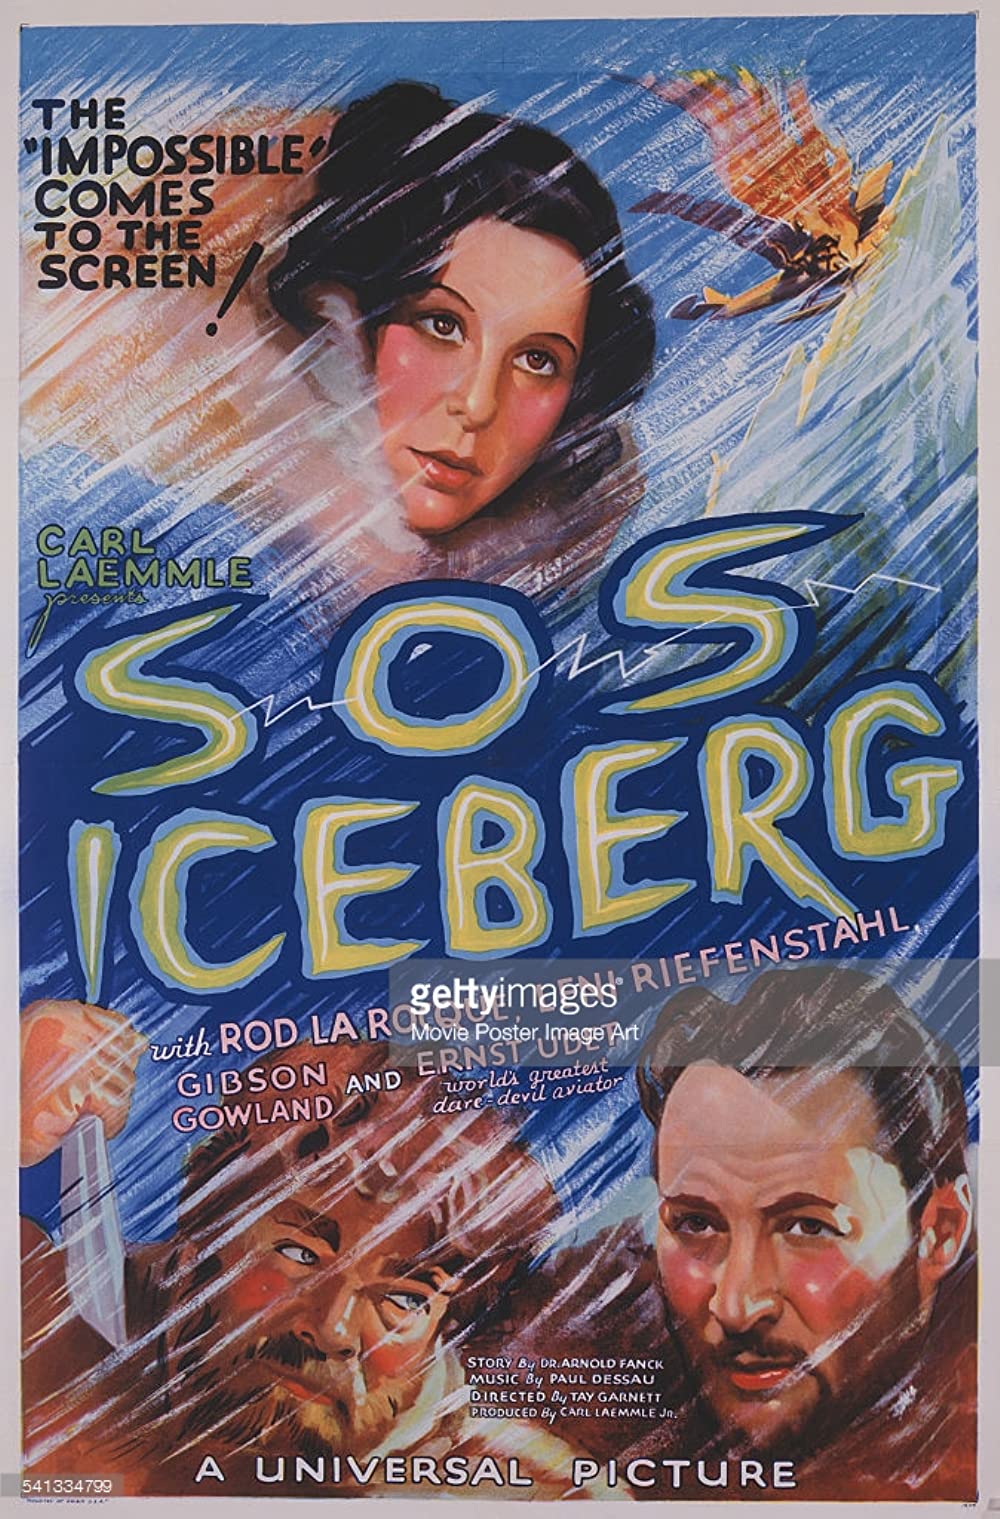 affiche du film S.O.S. Iceberg